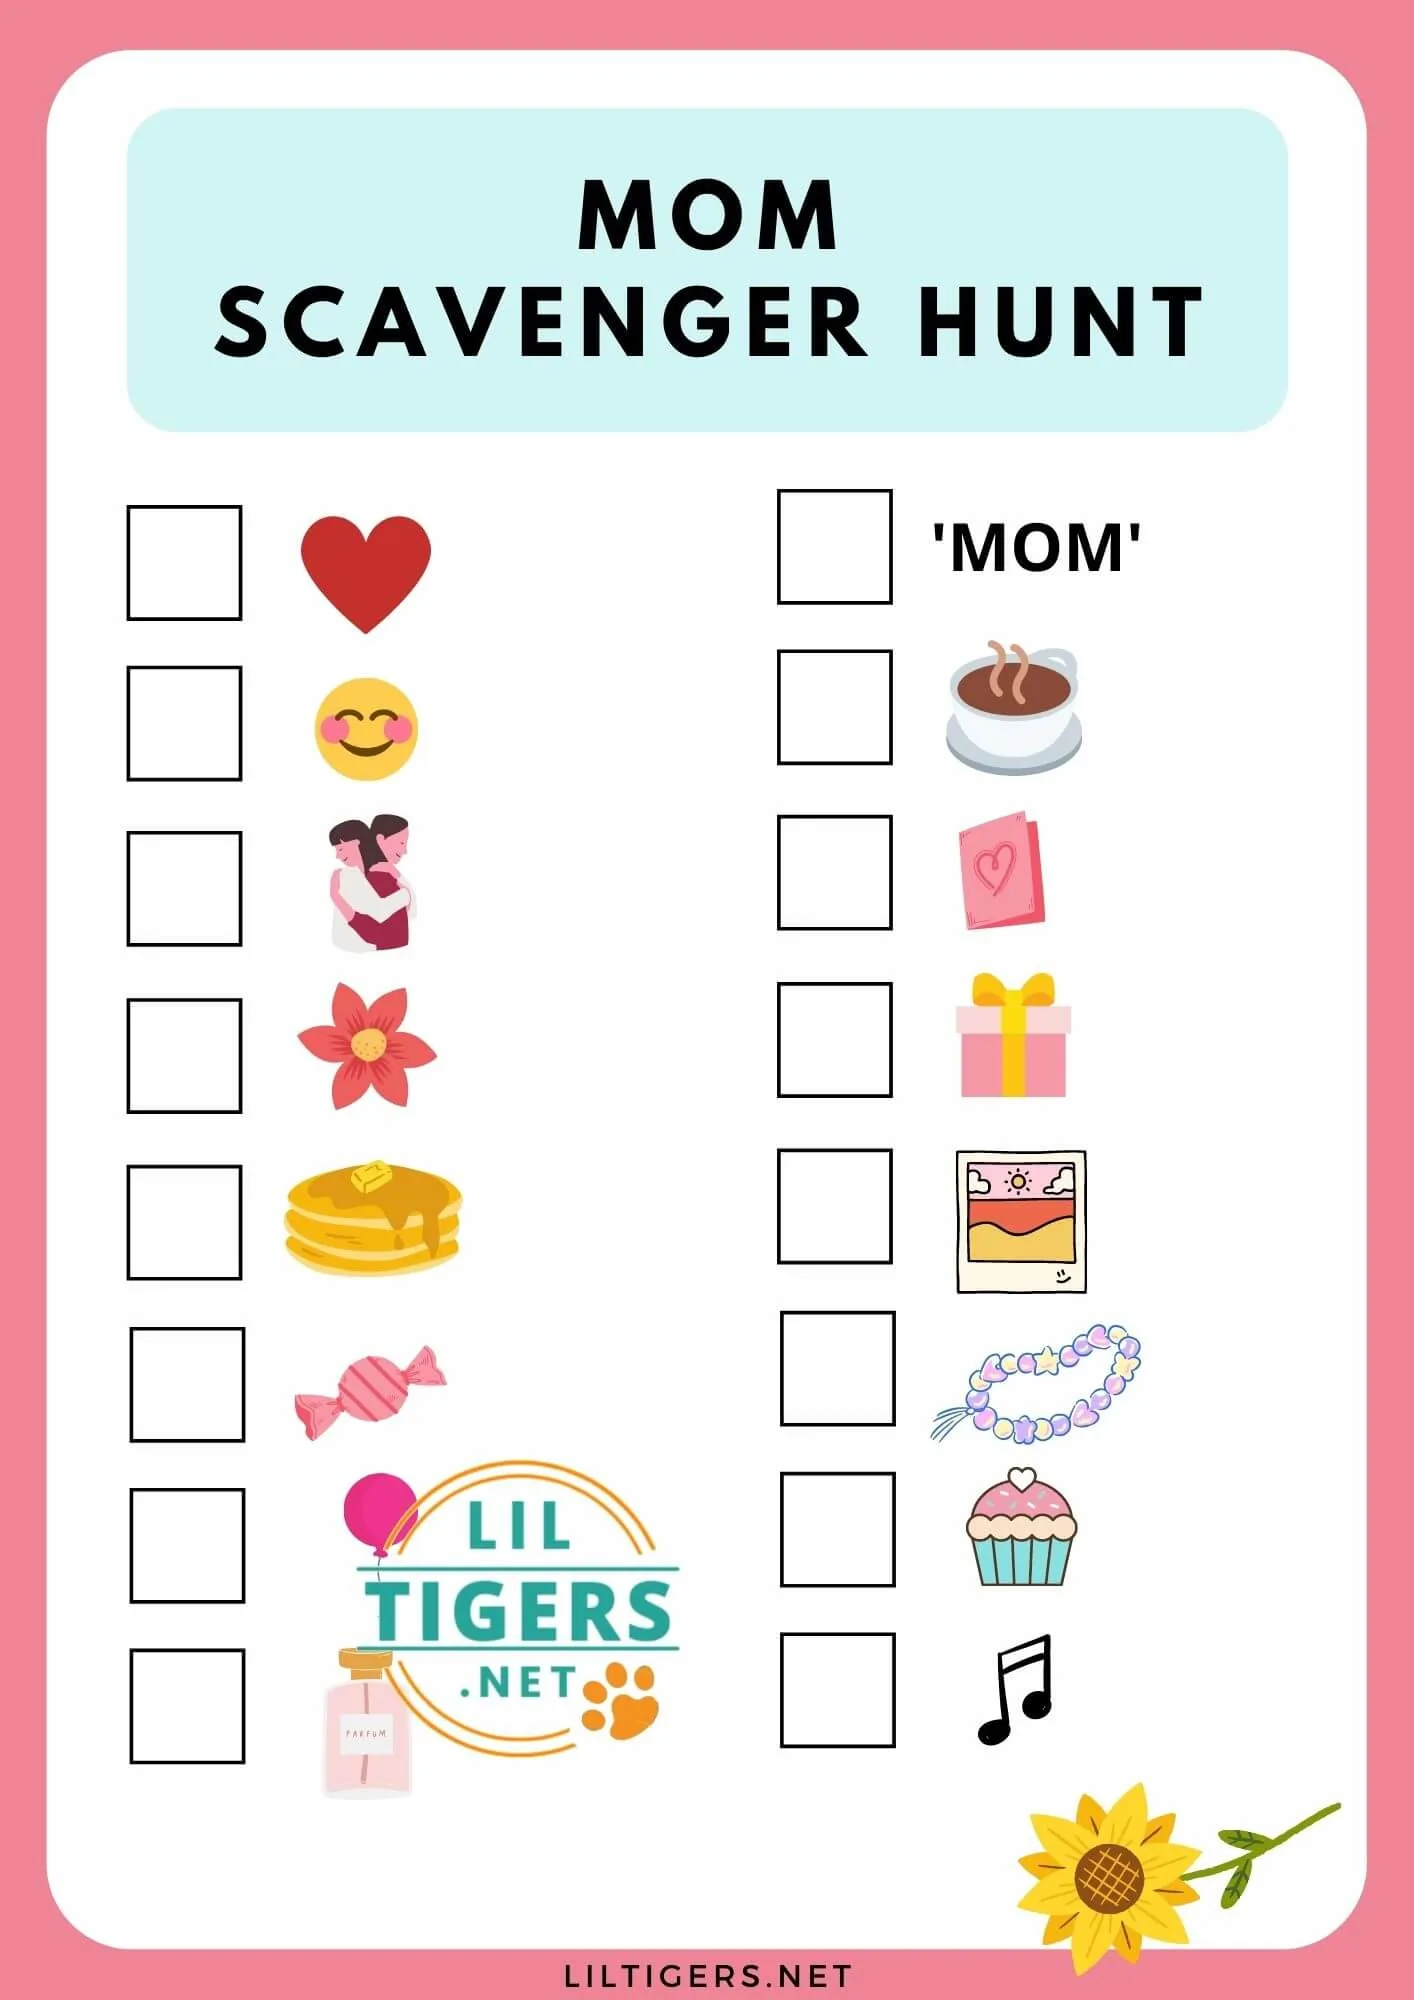 Scavenger Hunt for Mom's Birthday